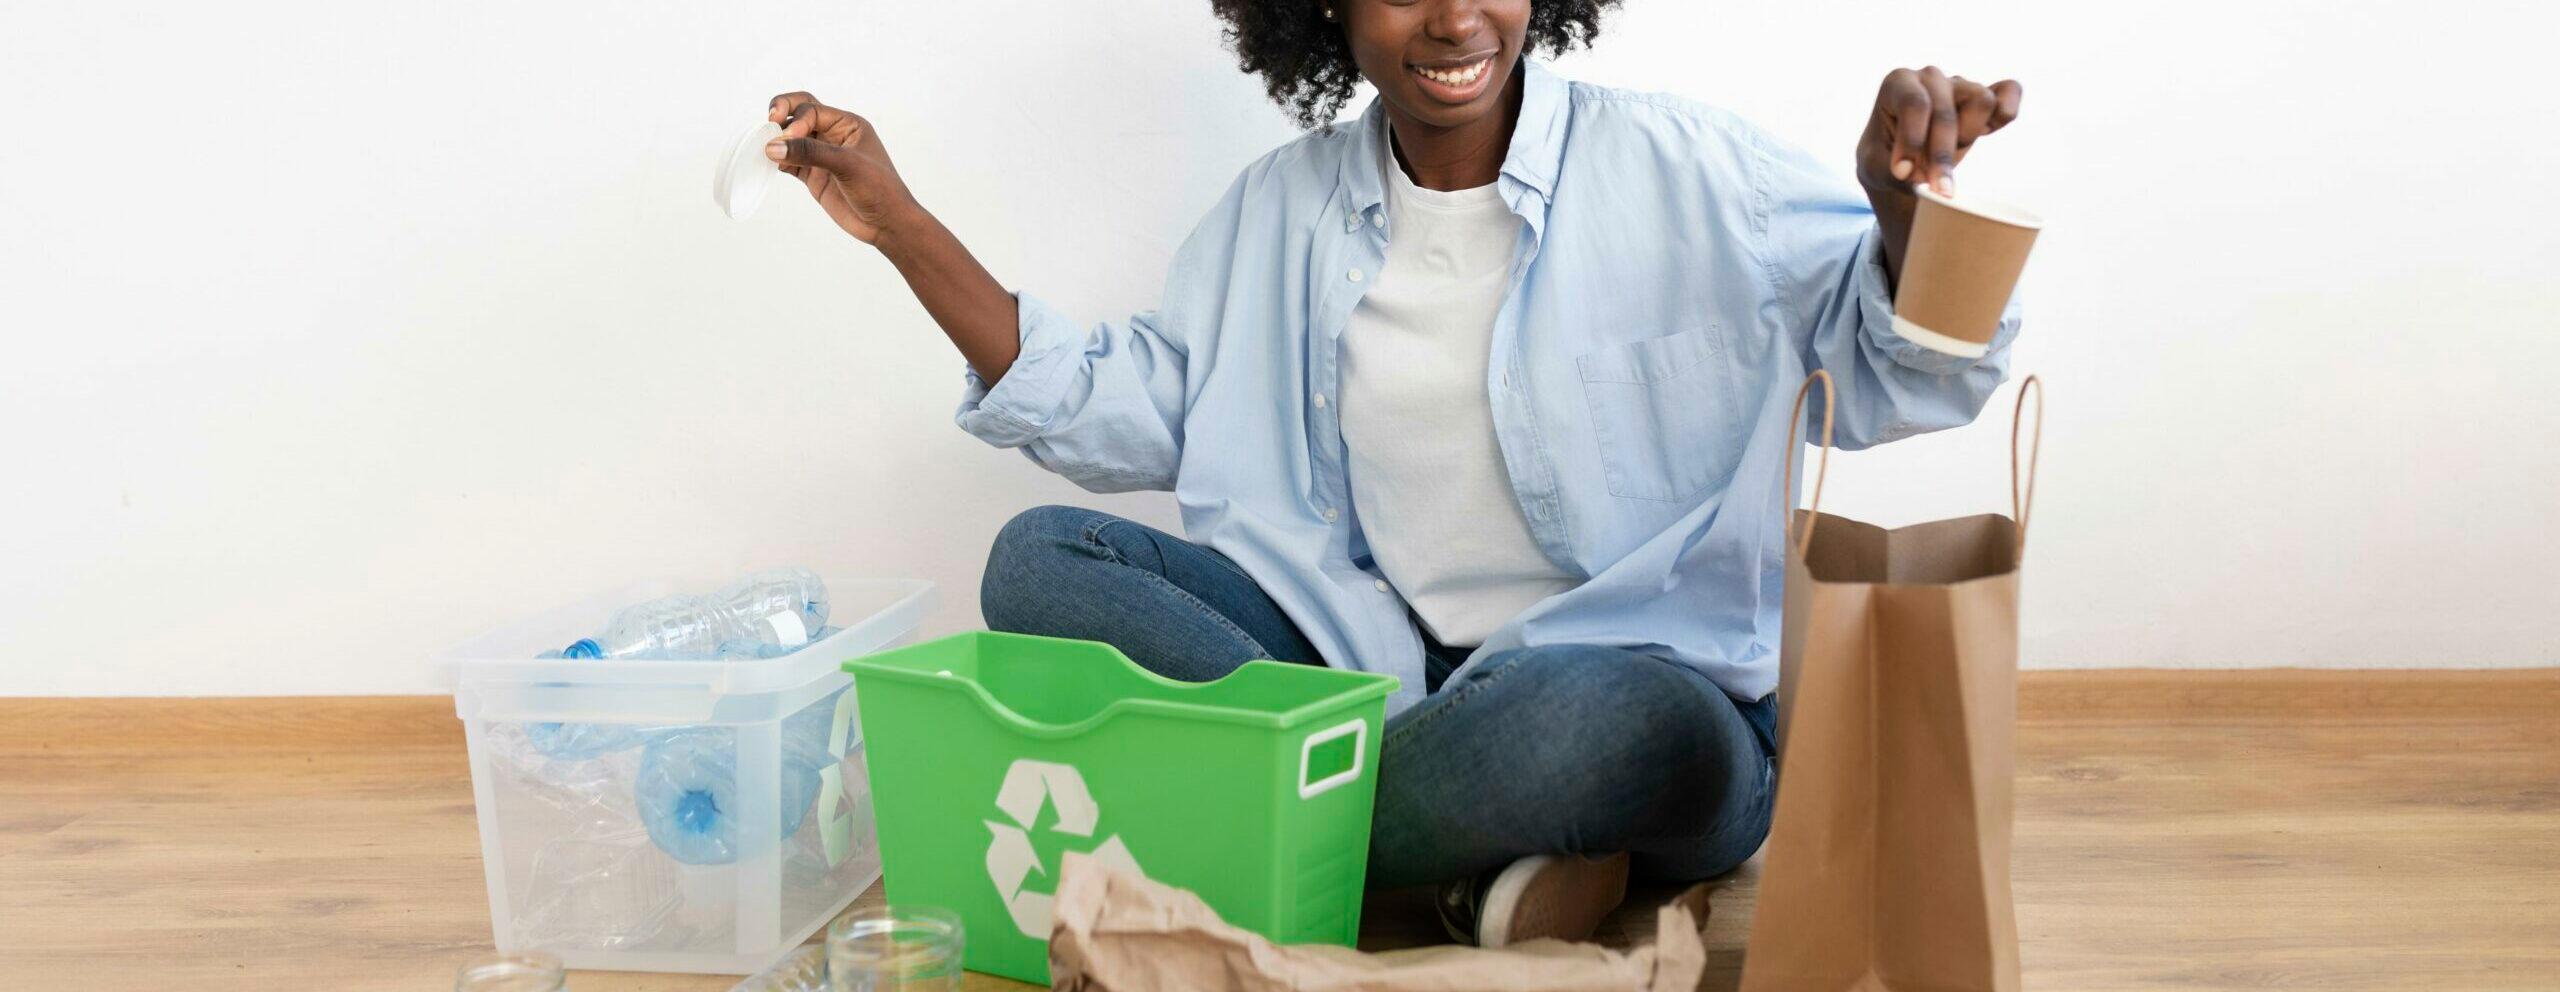 Lixo ou material reciclável?